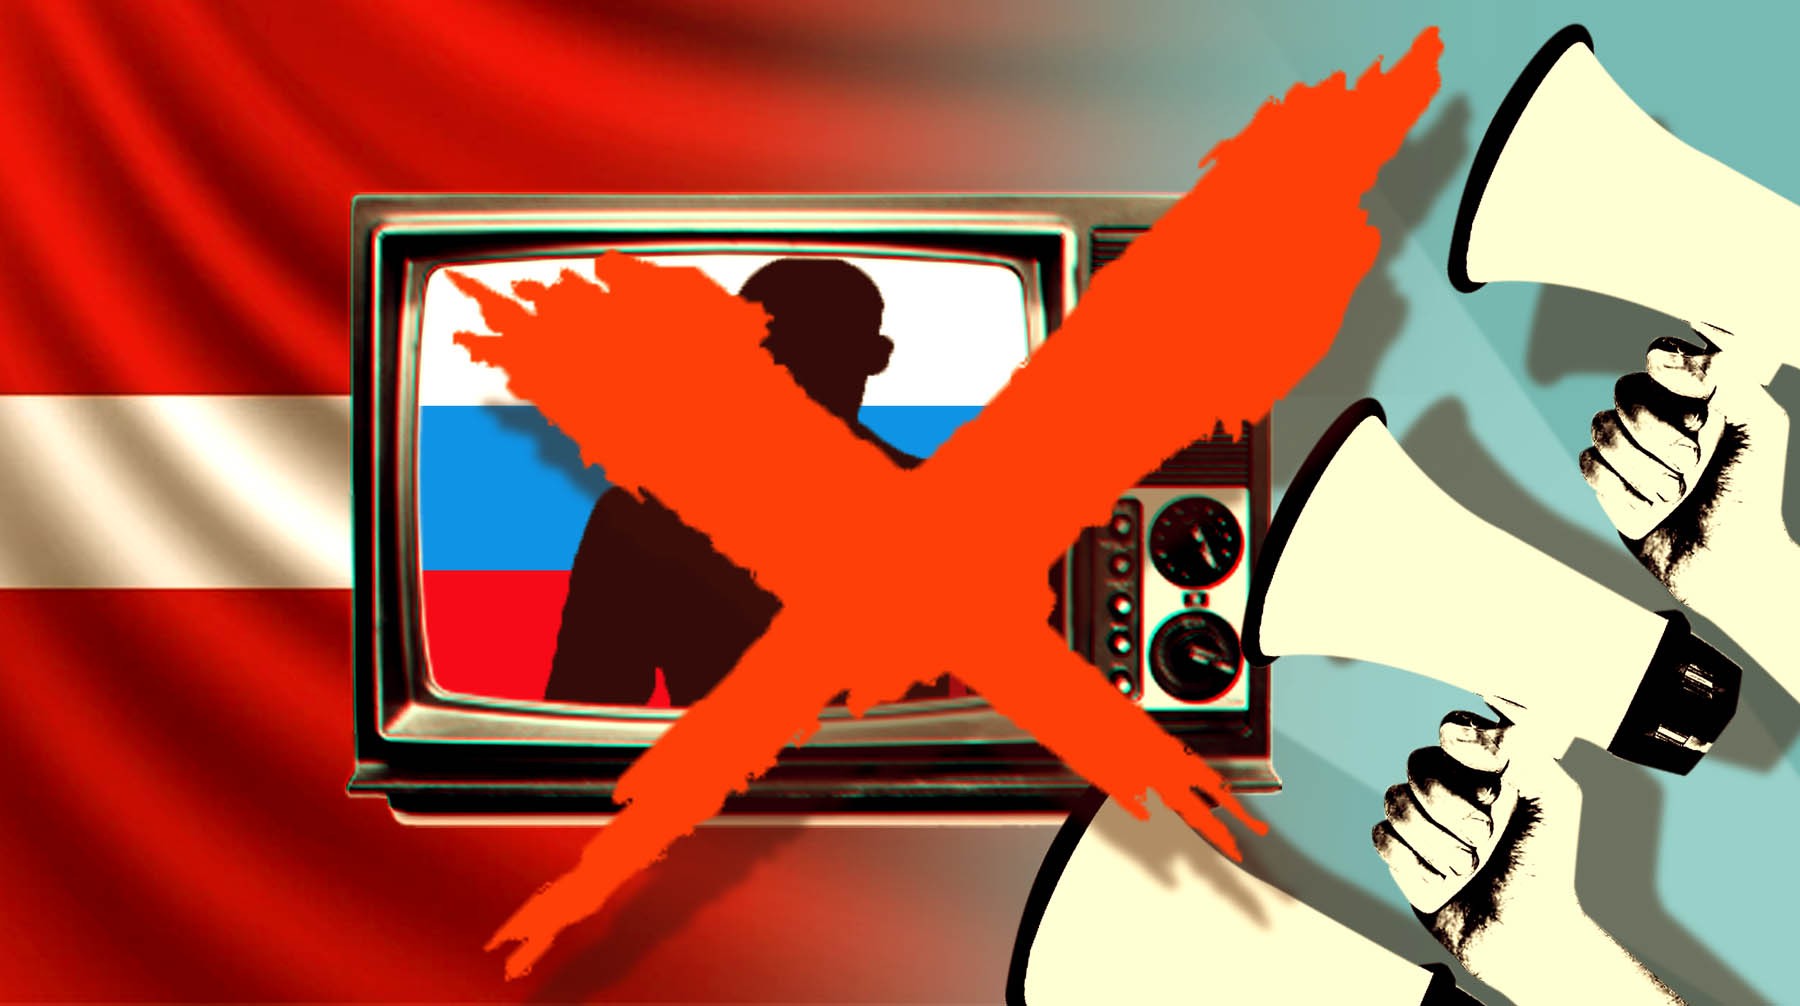 Dailystorm - «Мы чемпионы мира по свободе слова». Российские журналисты и политики против запрета вещания зарубежных телеканалов